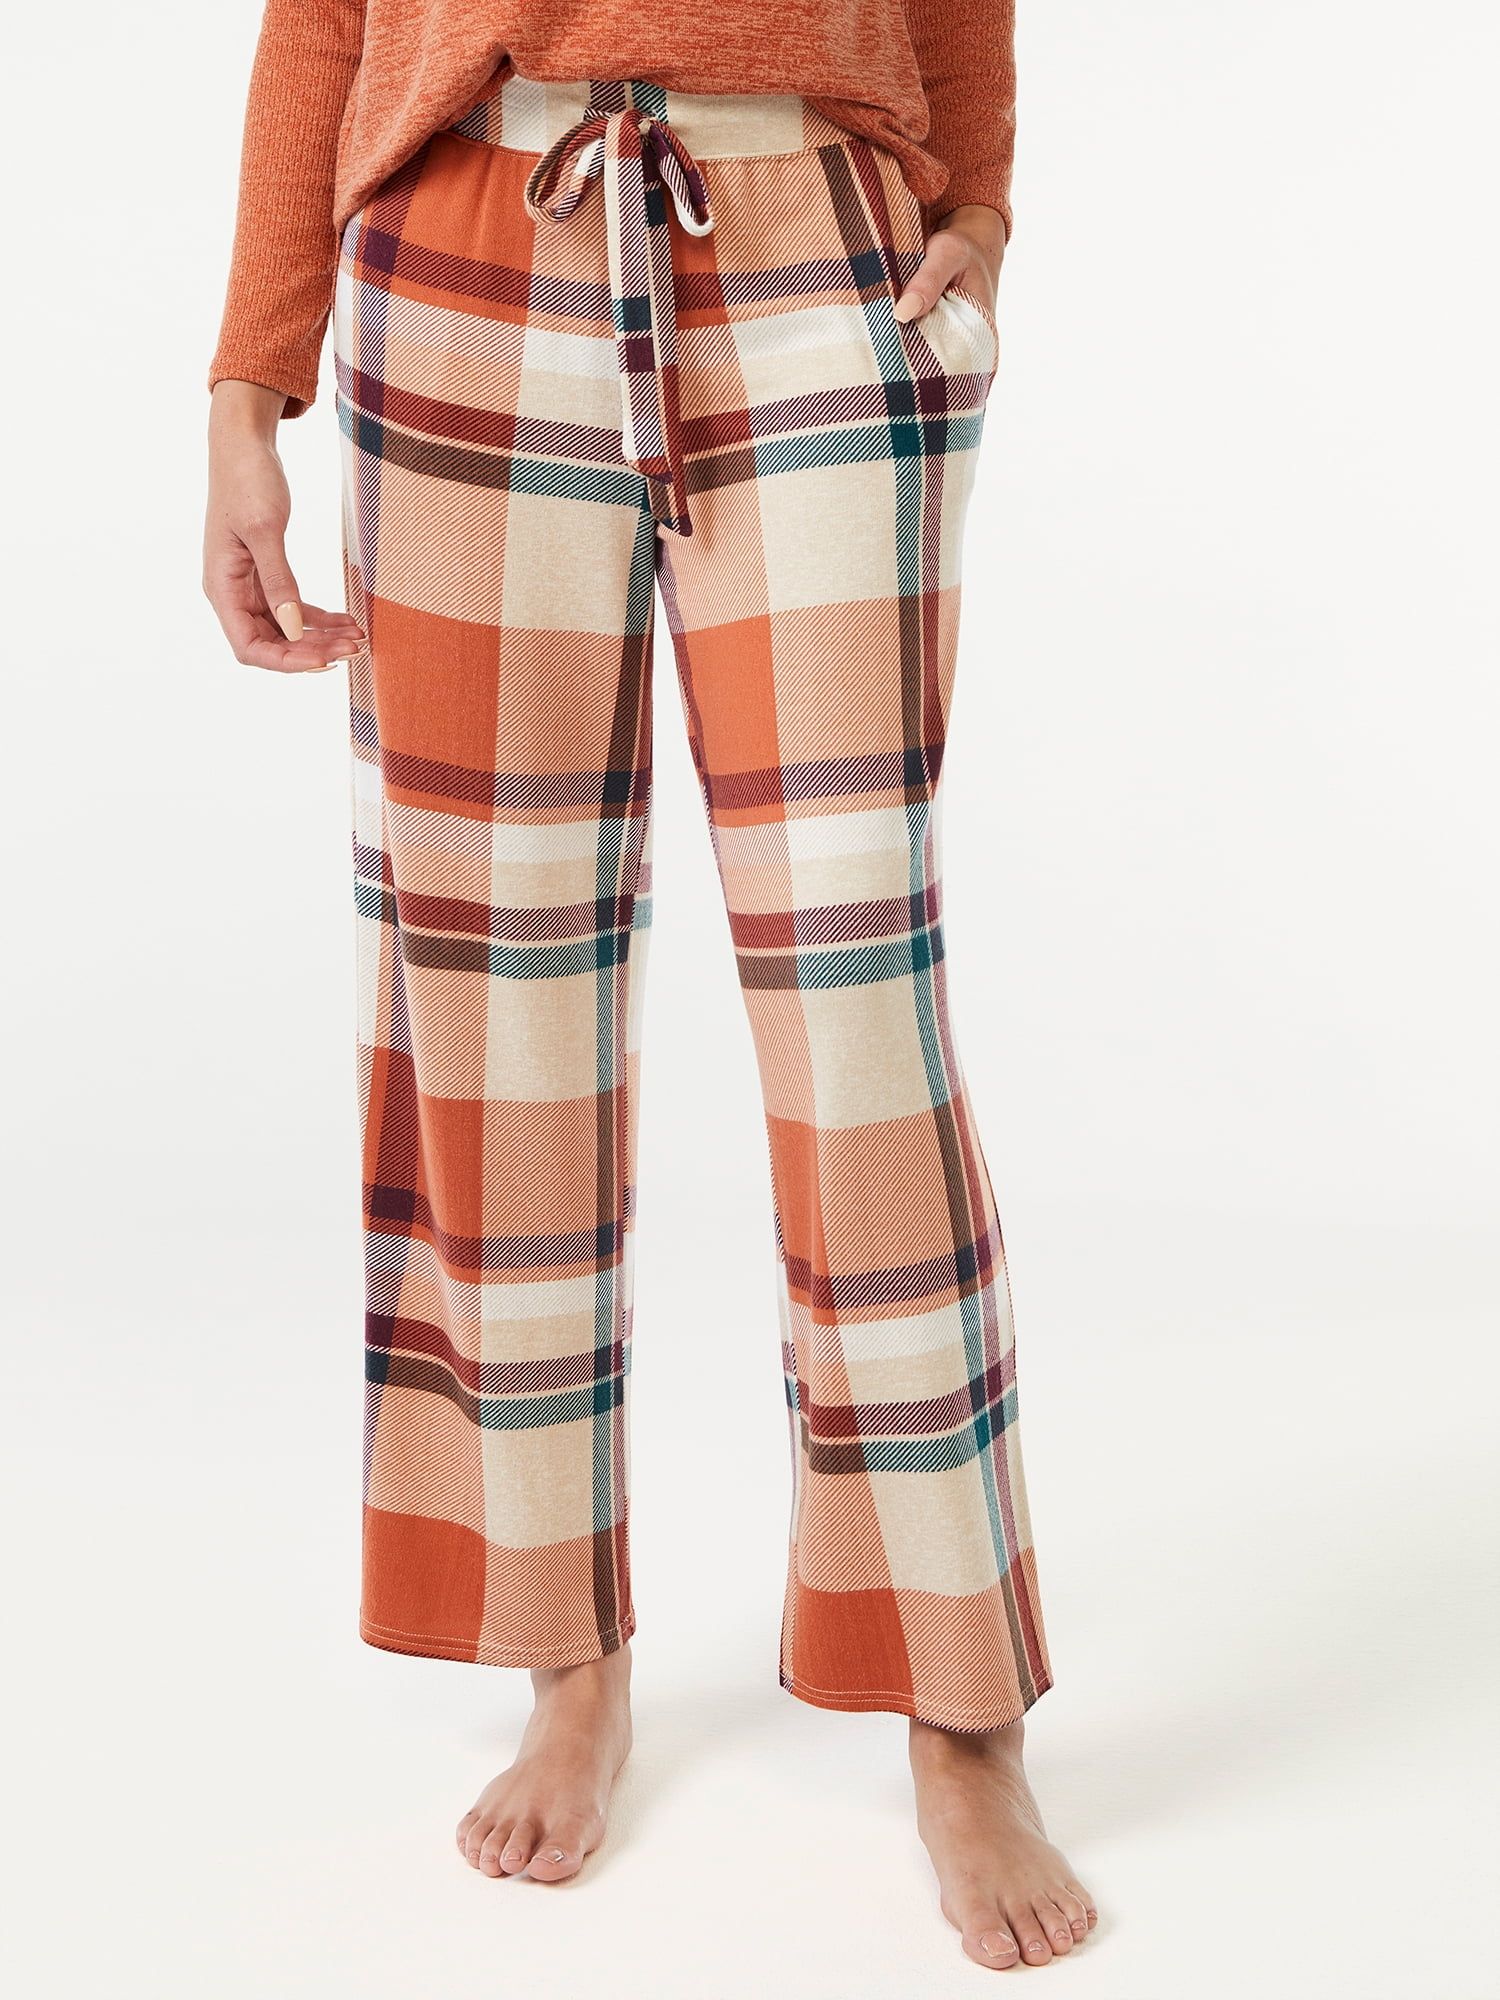 Joyspun Women's Hacci Knit Wide Leg Pajama Pants, Sizes to 3X | Walmart (US)